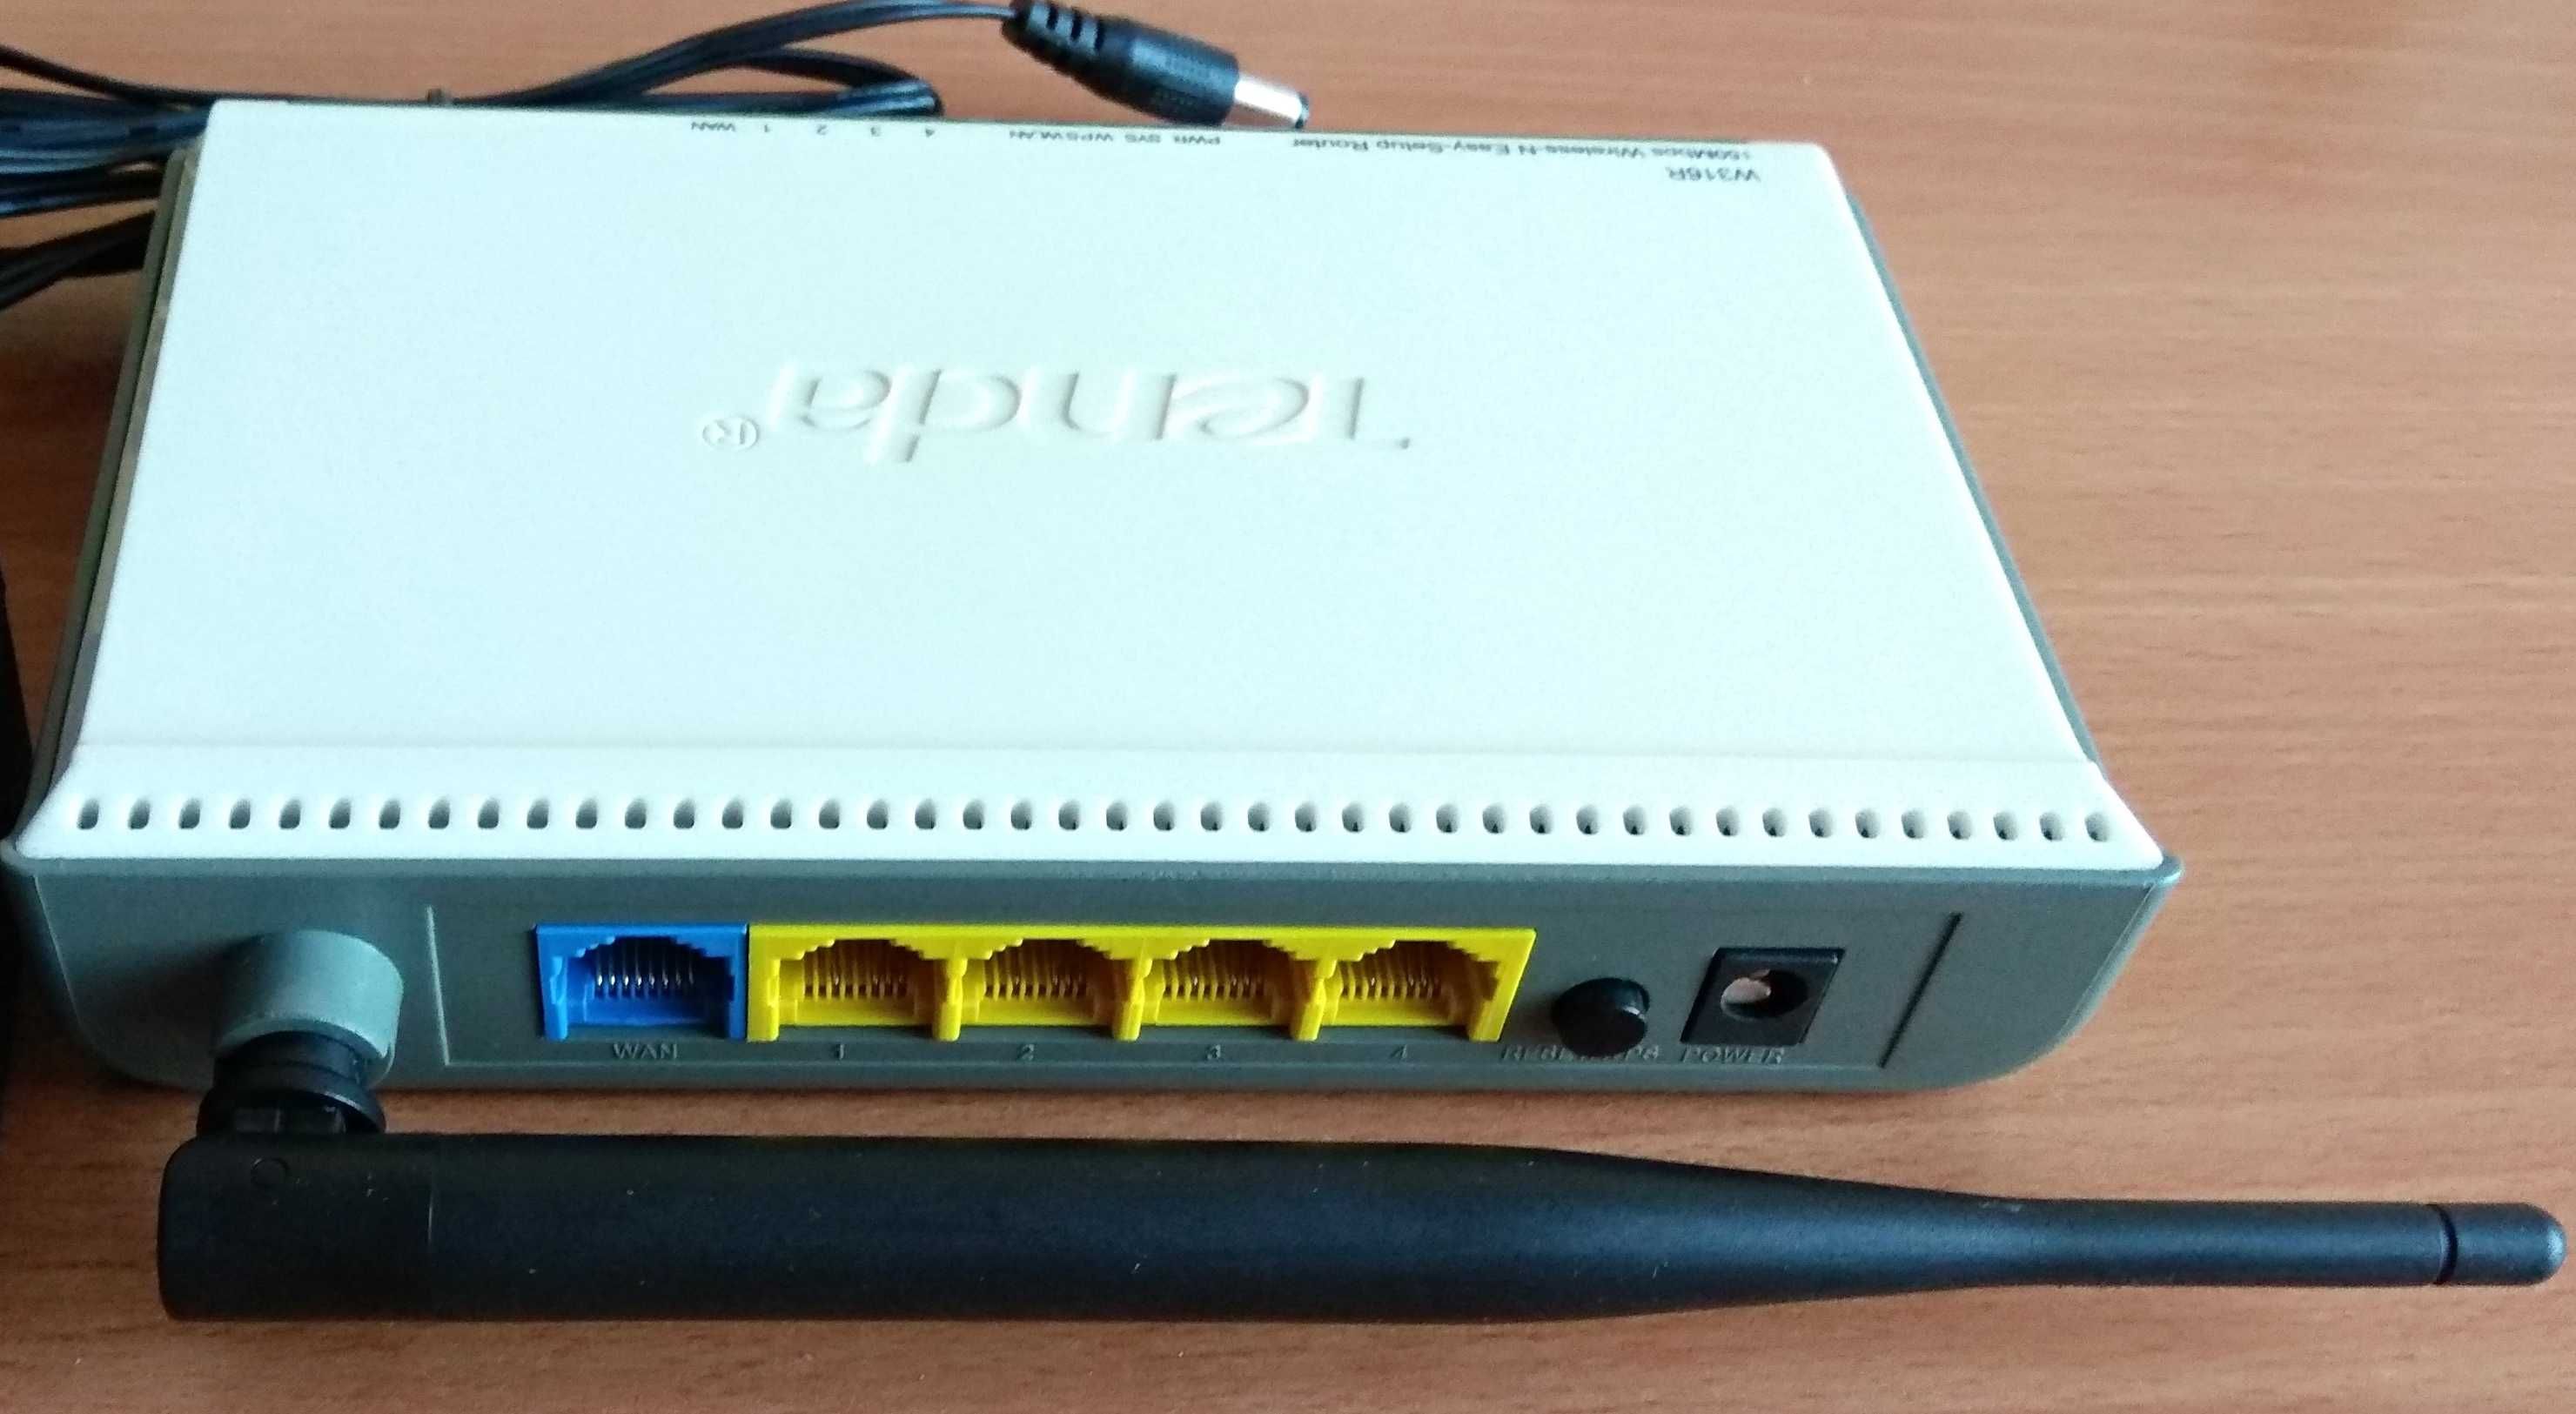 Router Tenda W316R, роутер, маршрутизатор, 150 Мбит/с, адаптер 5V->12V